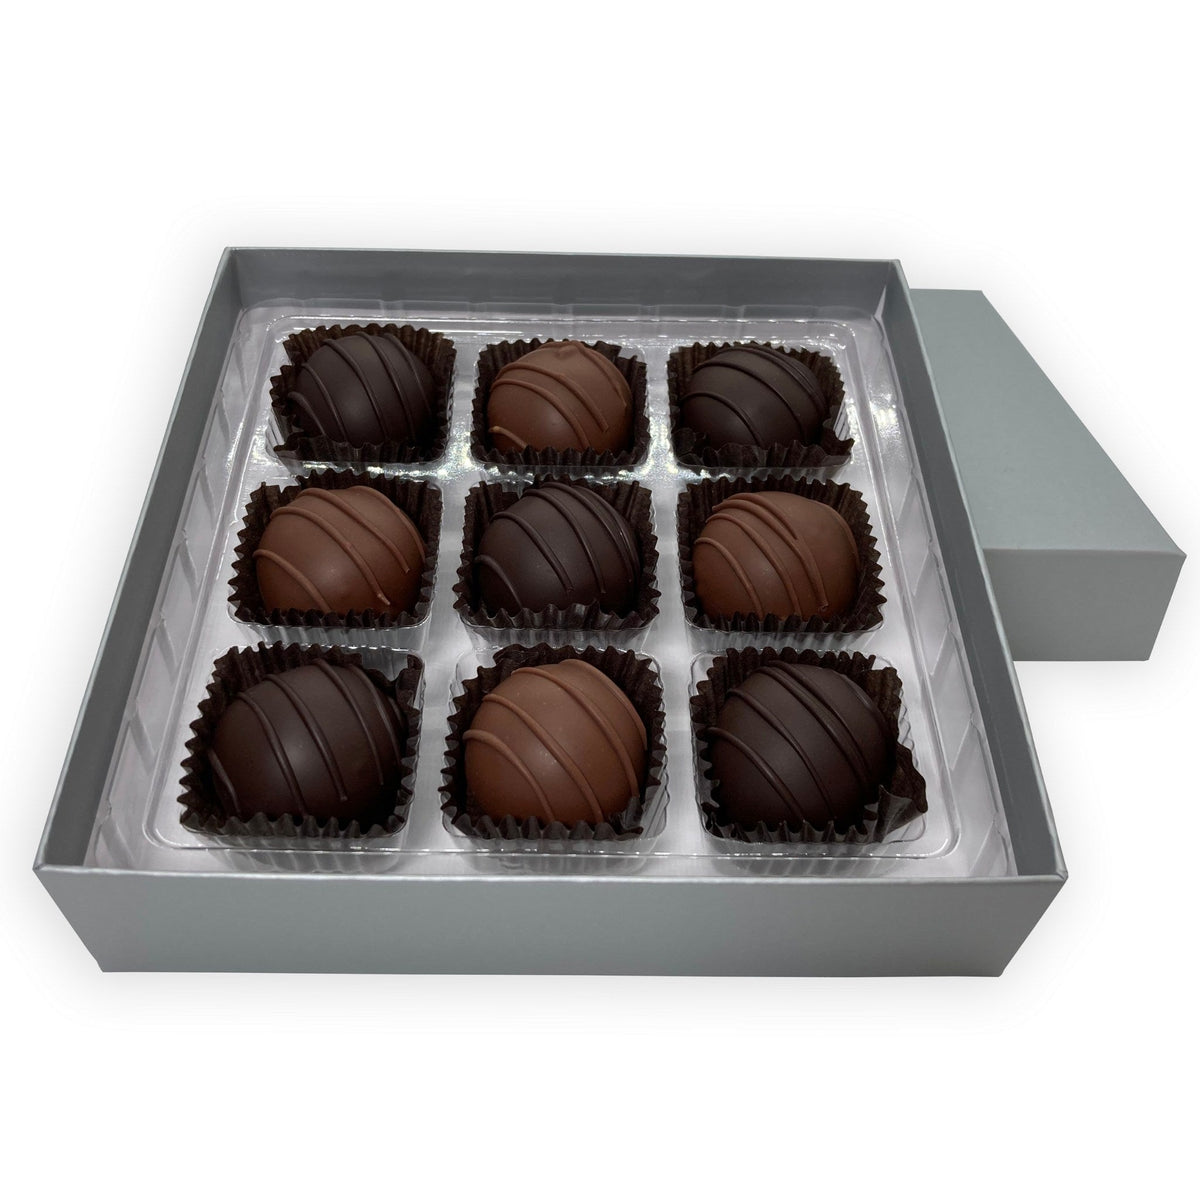 Dilettante Chocolates 9-Piece Ephemere Gift Box Featuring Milk and Dark Ephemere Flavors